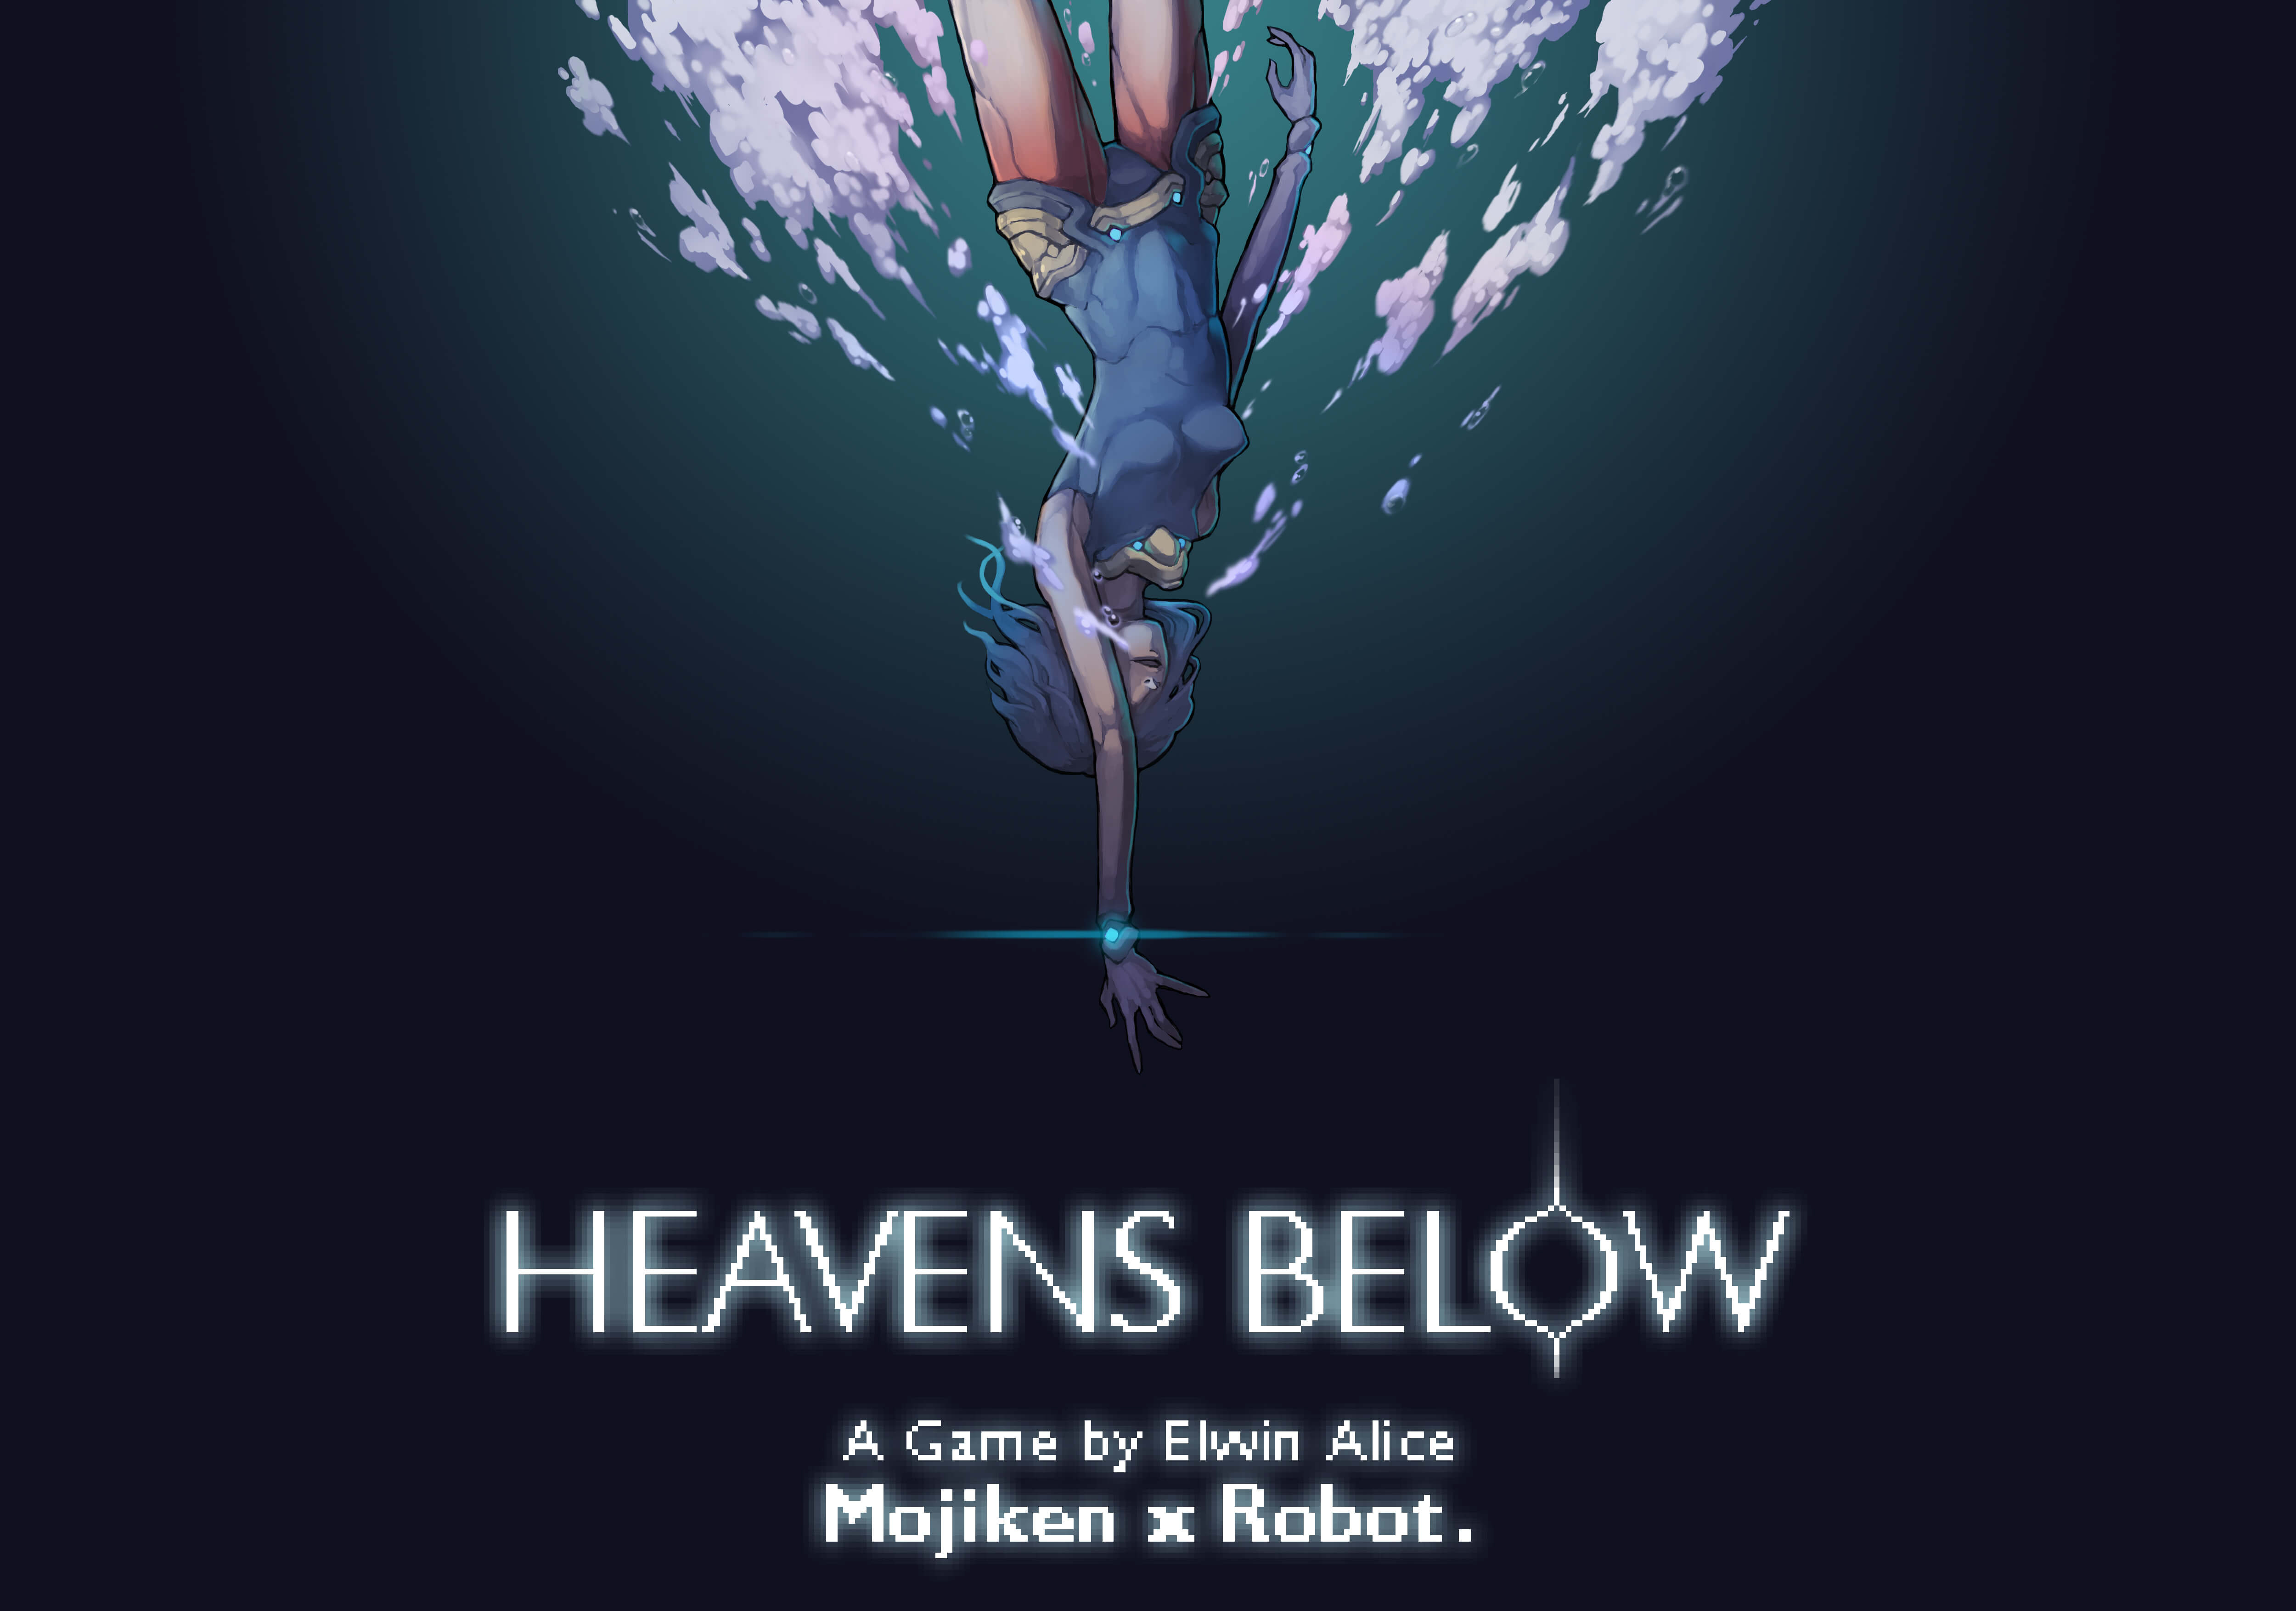 Heavens Below